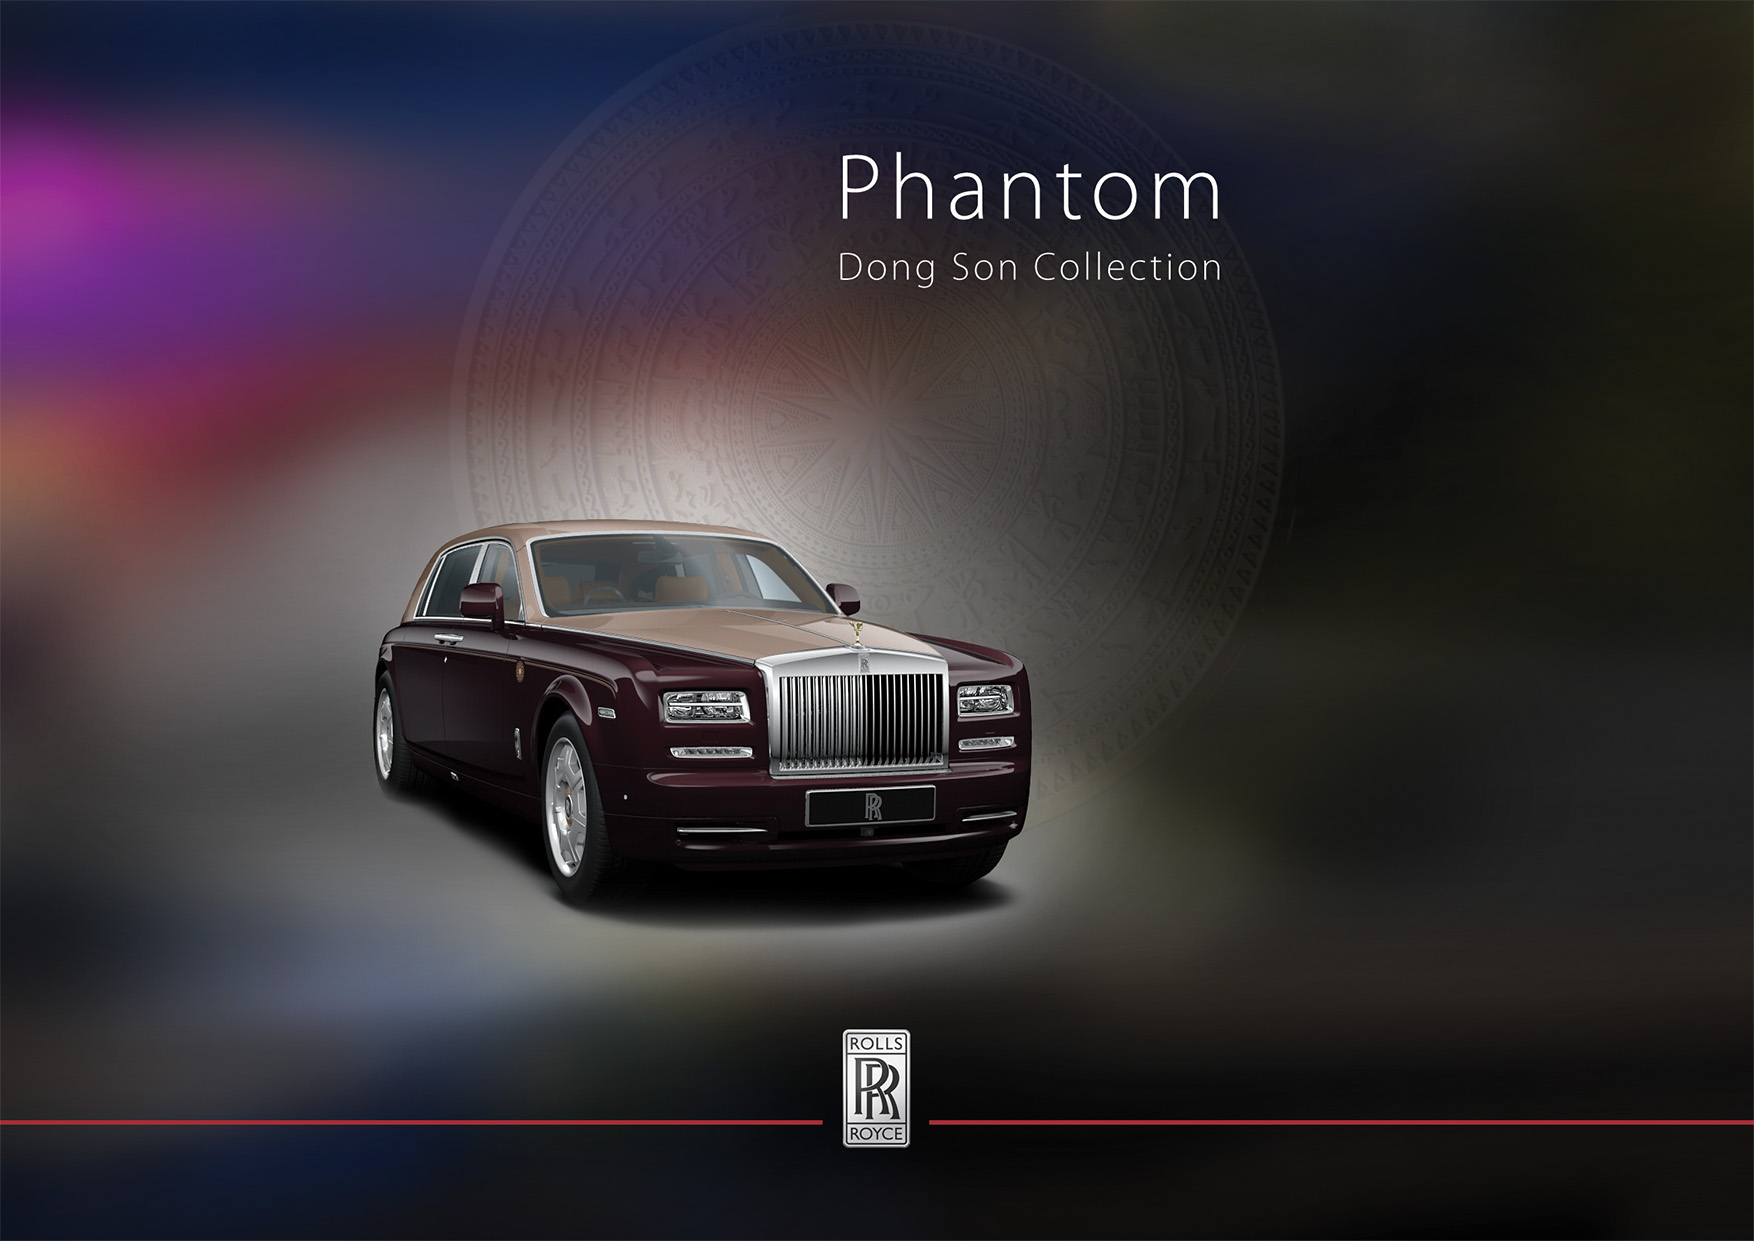 RollsRoyce giới thiệu xe Phantom phiên bản Rồng  Báo Dân trí